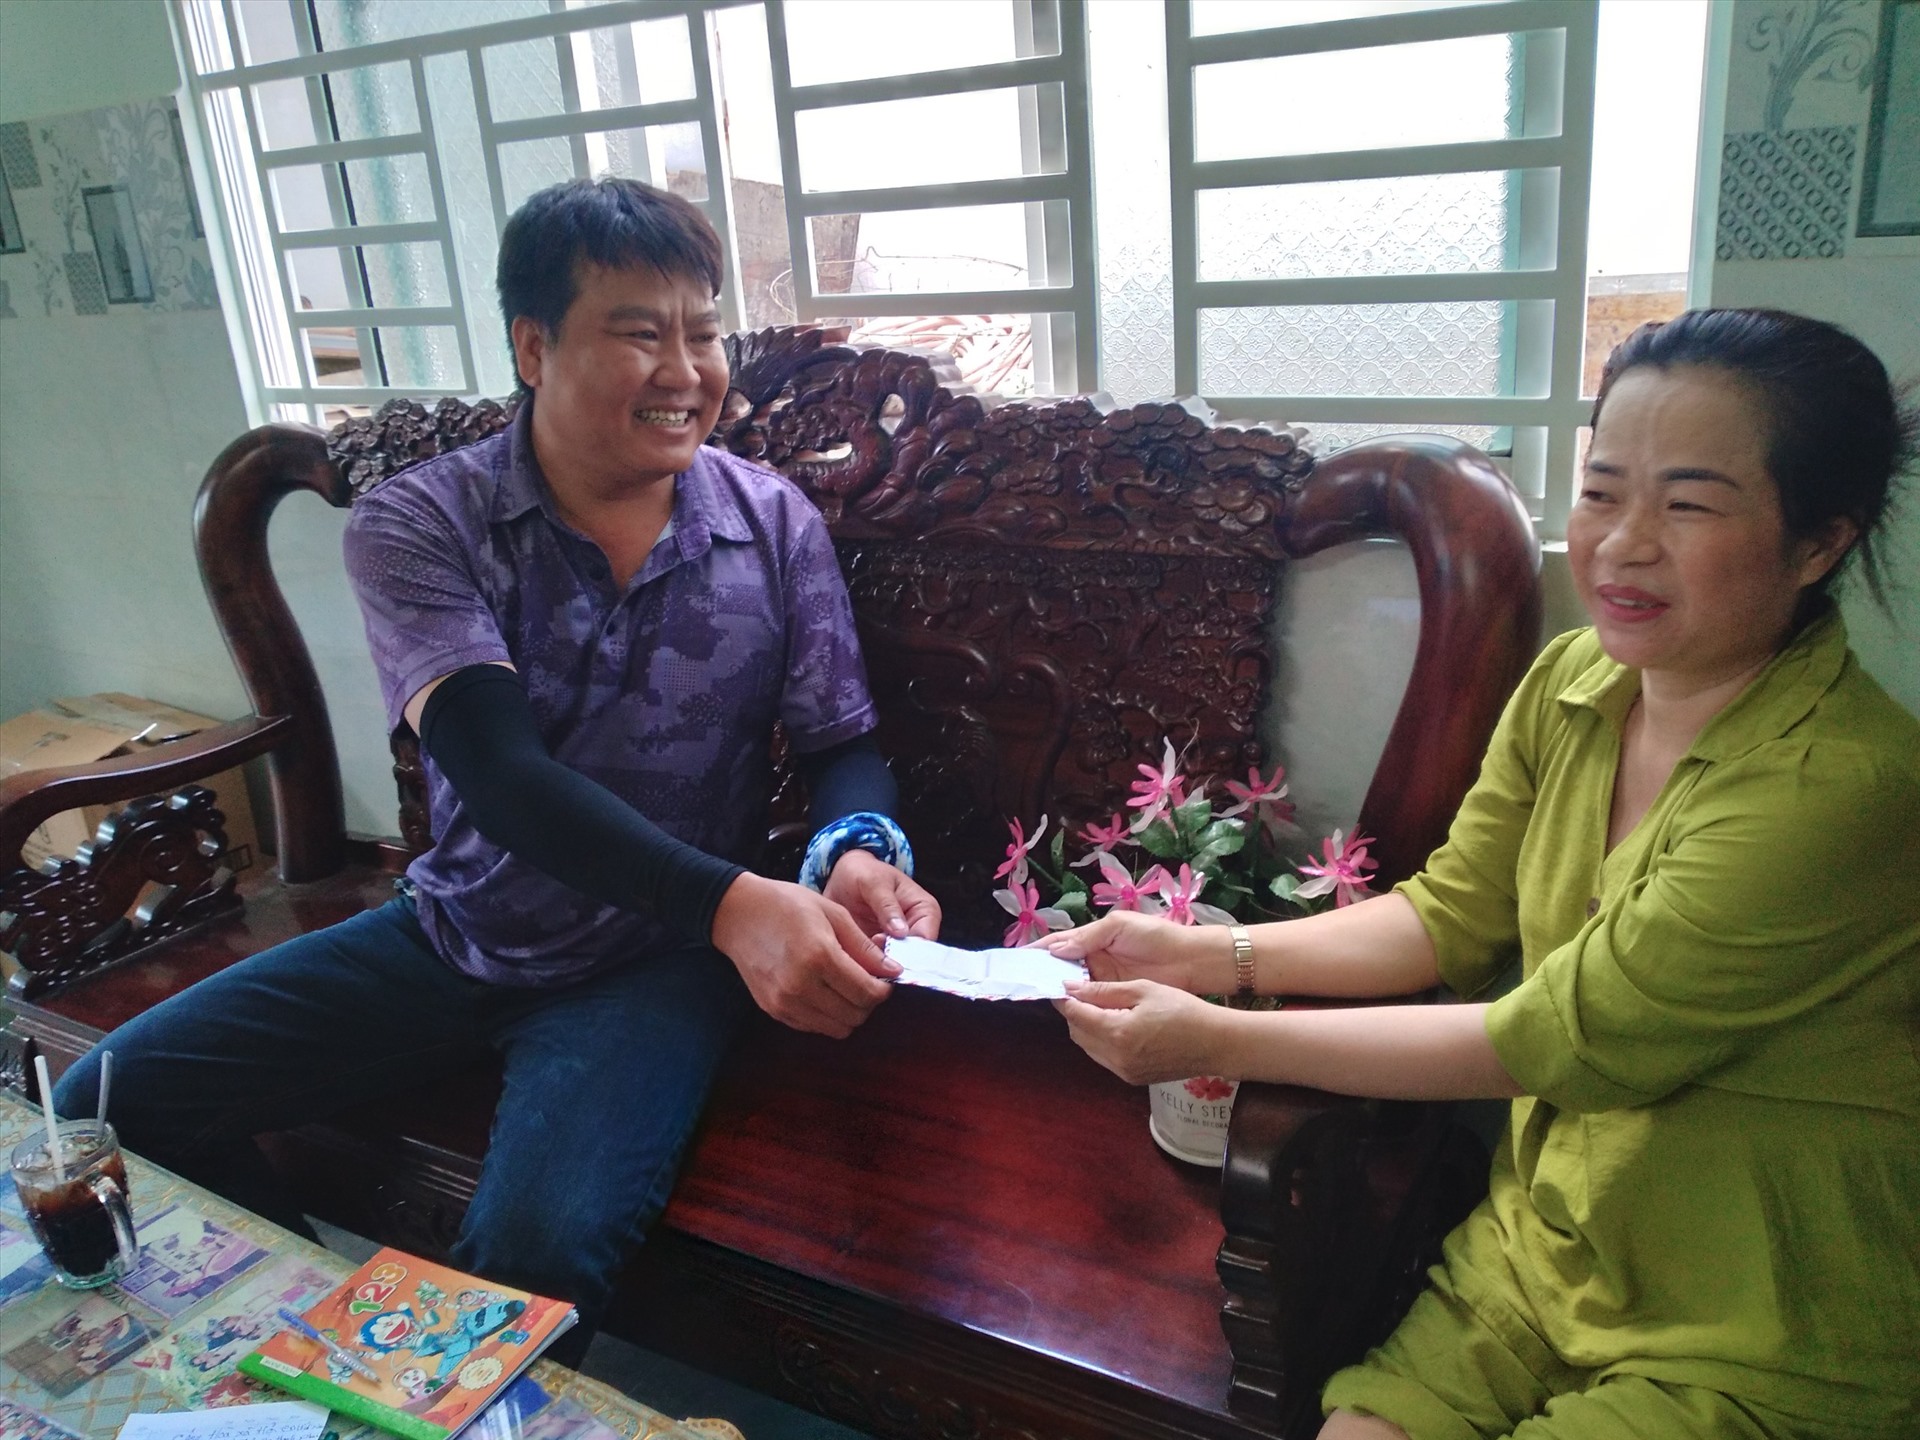 Đại diện Công ty Cổ phần xây dựng số 1 – COFICO trao tiền hỗ trợ cho bà Tuyền. Ảnh: Gia đình cung cấp.